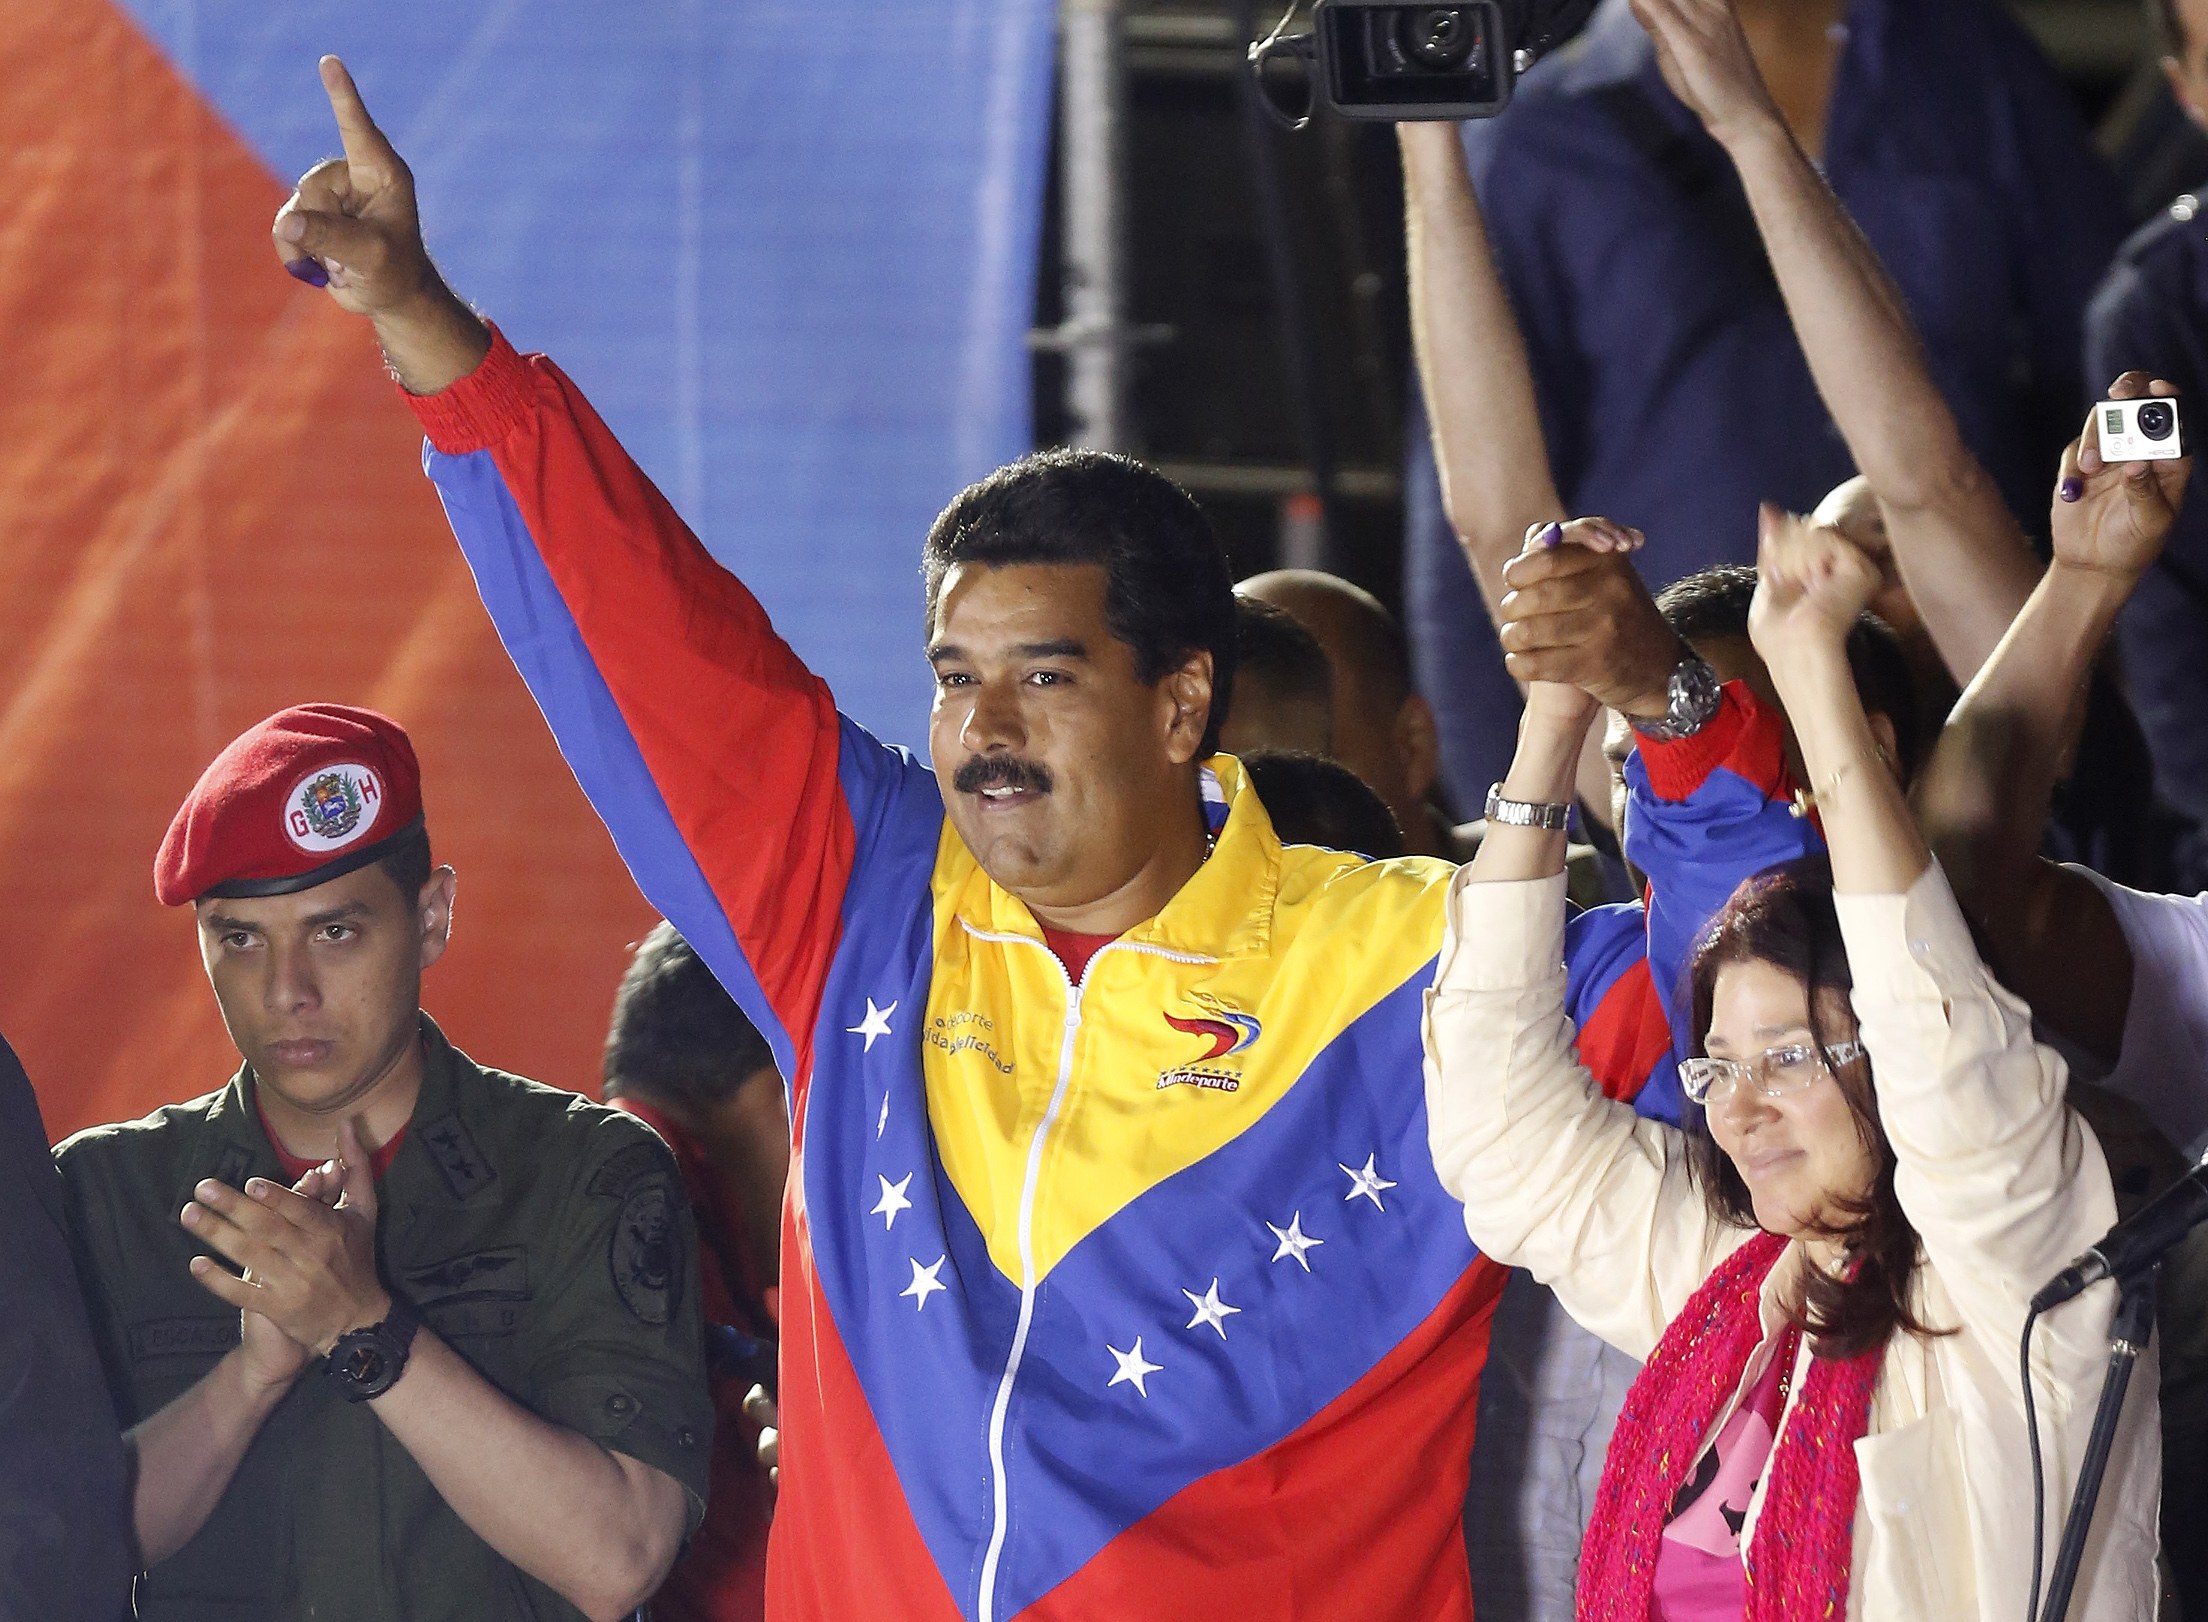 马杜罗赢得委内瑞拉总统大选 执政须抓住“民心”